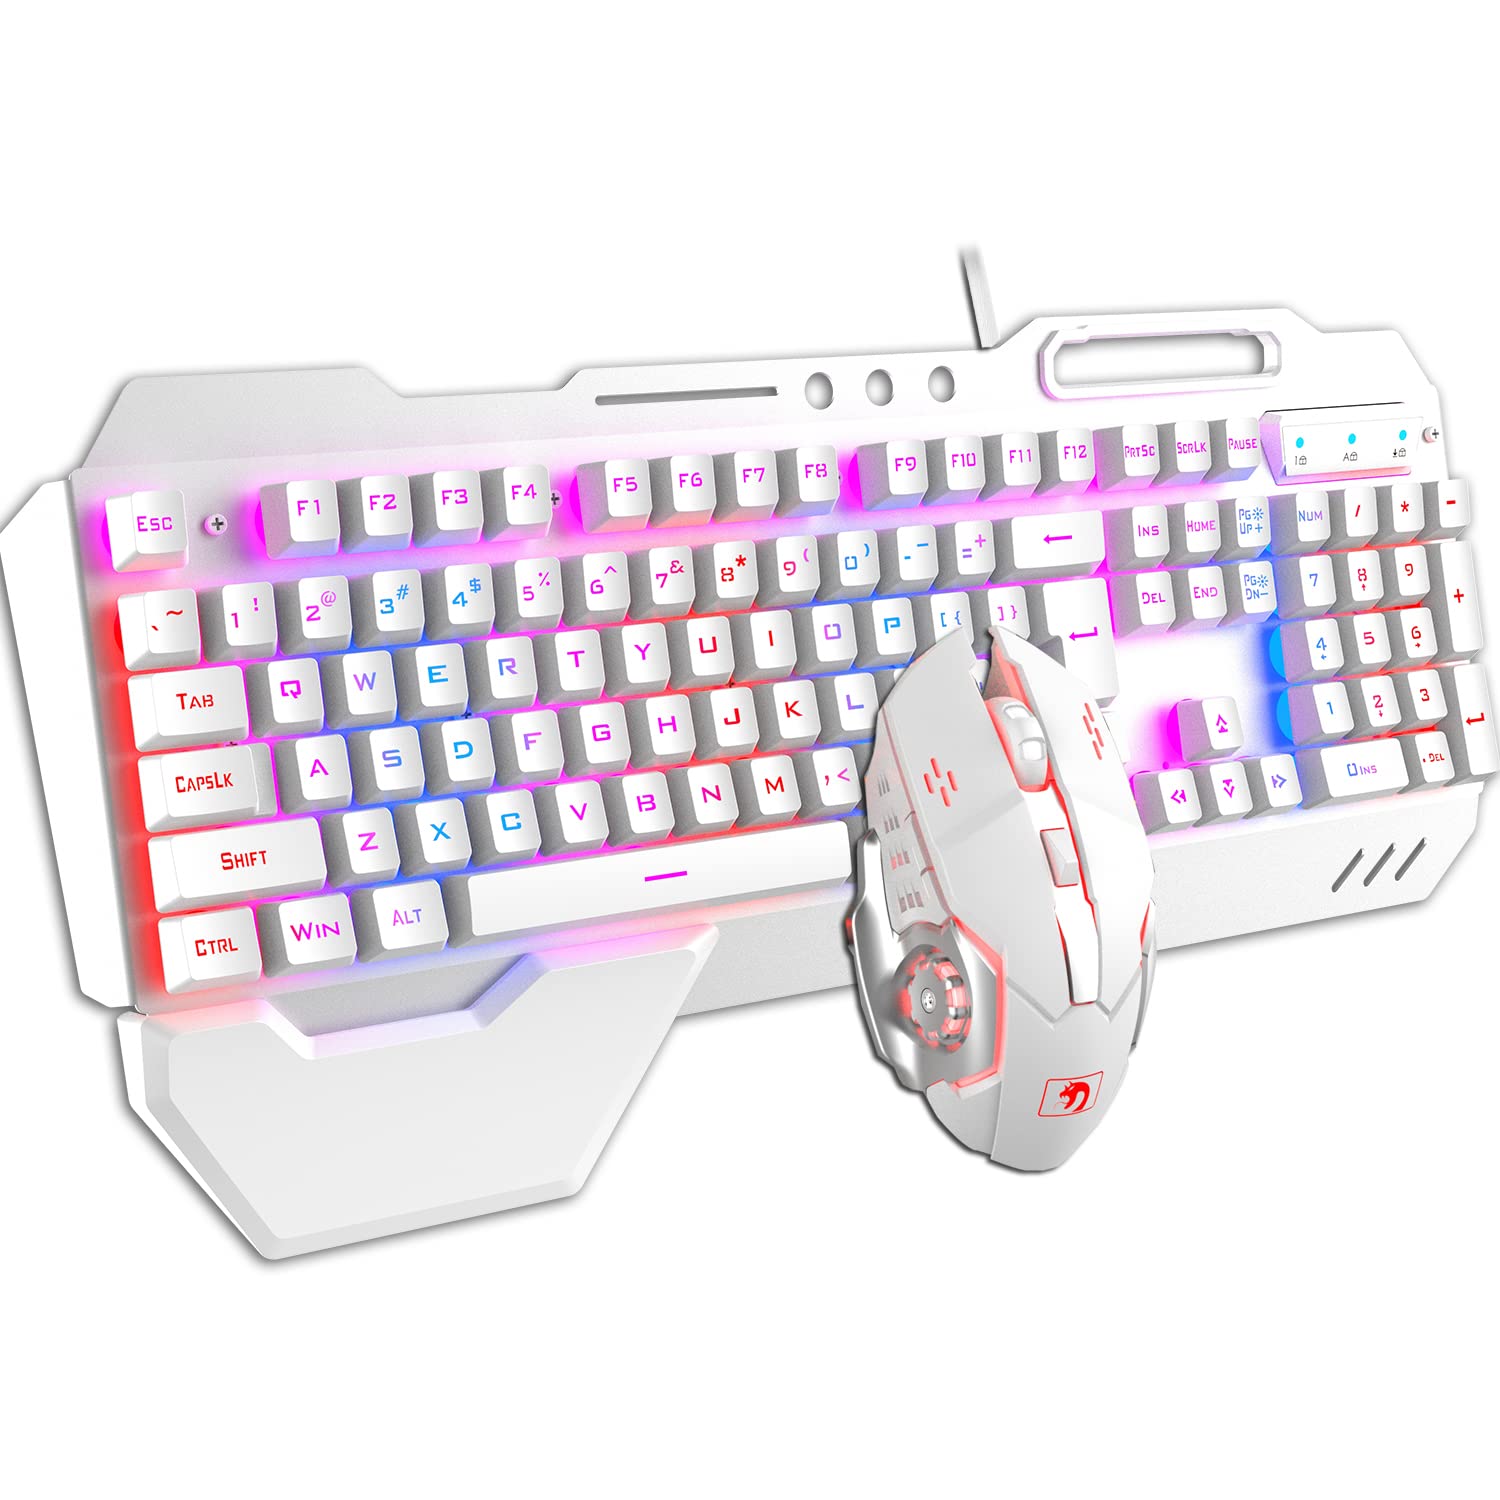 Hoopond-Technologie Tastatur und Maus Kombination verdrahtet Hybrid/RGB 16 Arten von Hintergrundbeleuchtung Weißmetall Spieltastatur mit Handunterstützung + 3200DPI 4-Farben-Atemlicht Maus